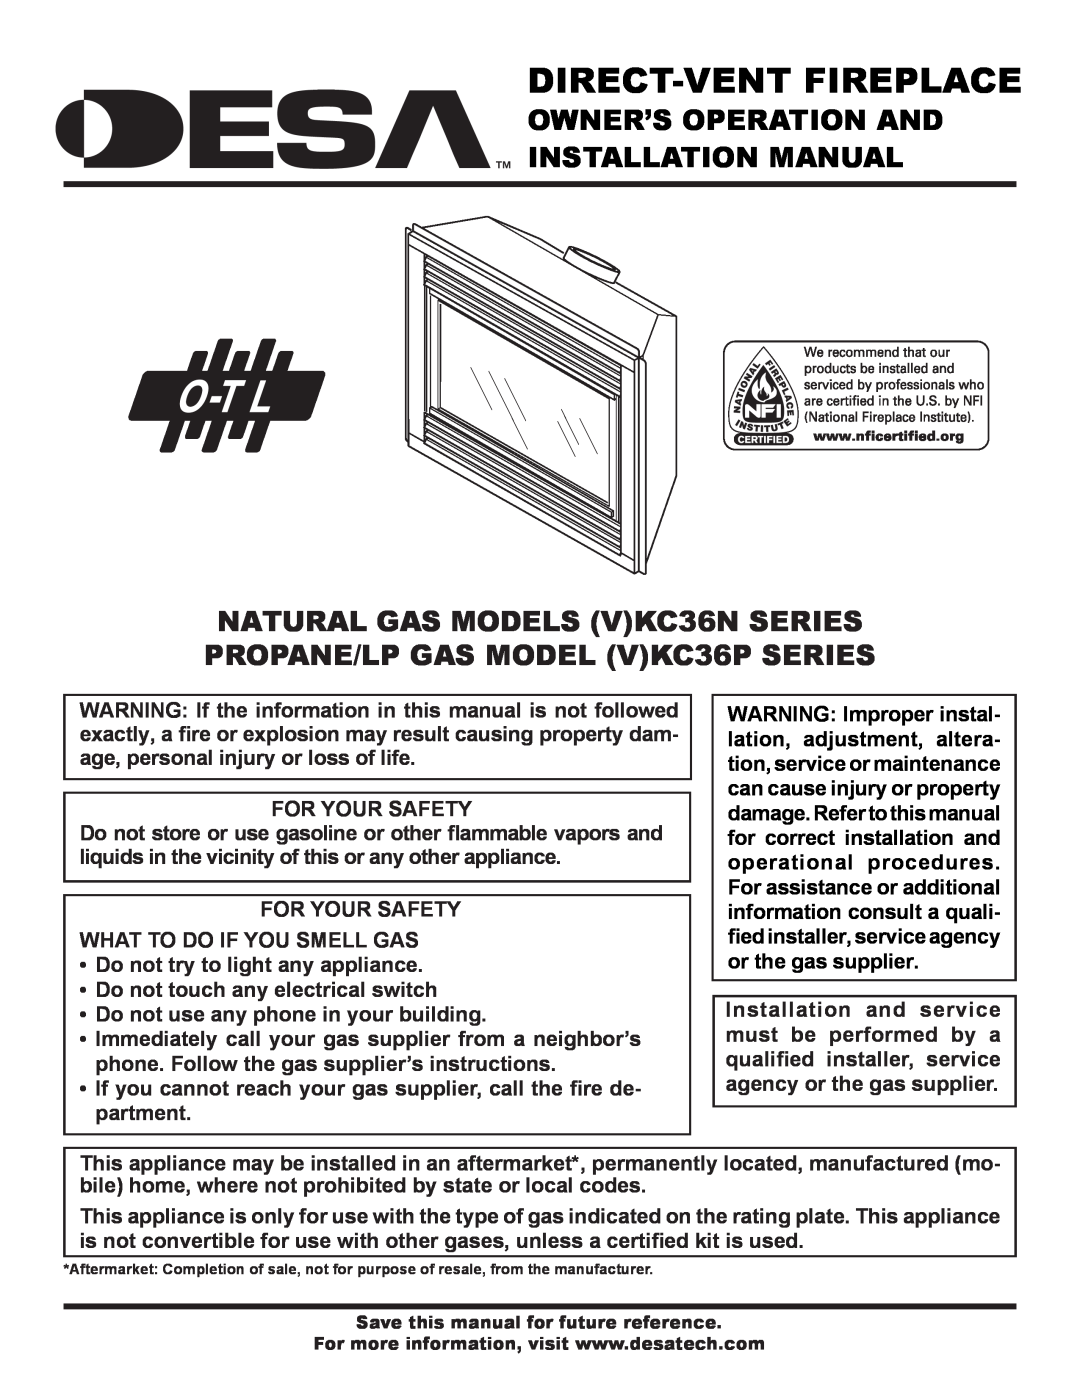 Desa (V)KC36P installation manual Owner’S Operation And Installation Manual, For Your Safety, Direct-Ventfireplace 